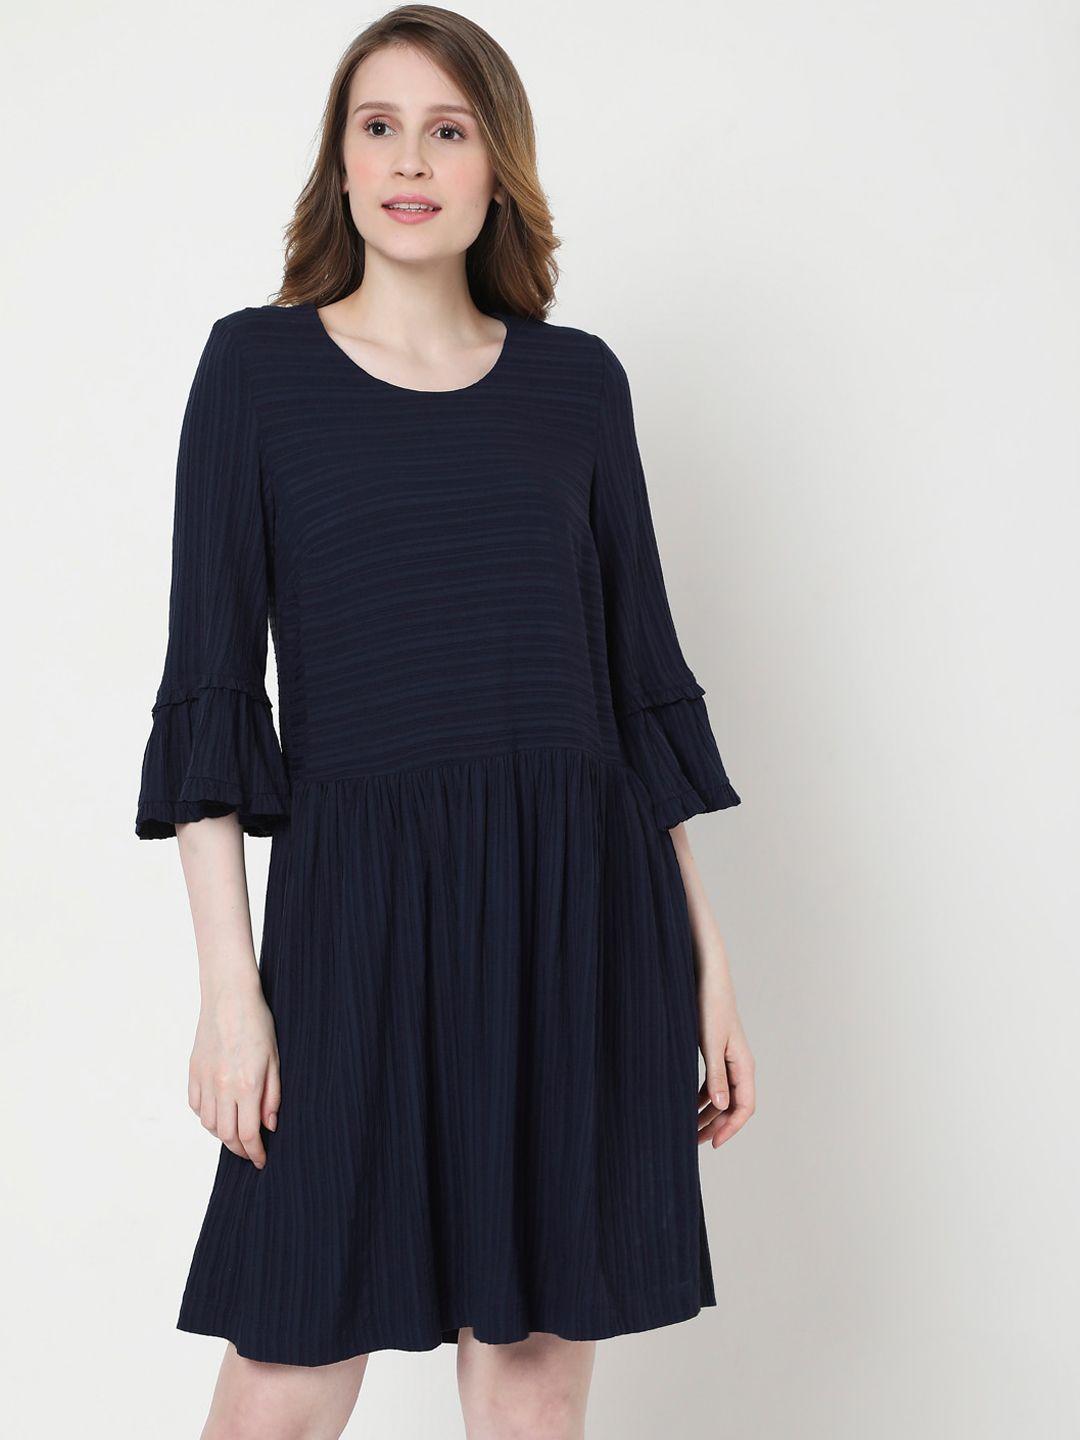 vero moda women navy blue & black striped round neck drop-waist dress